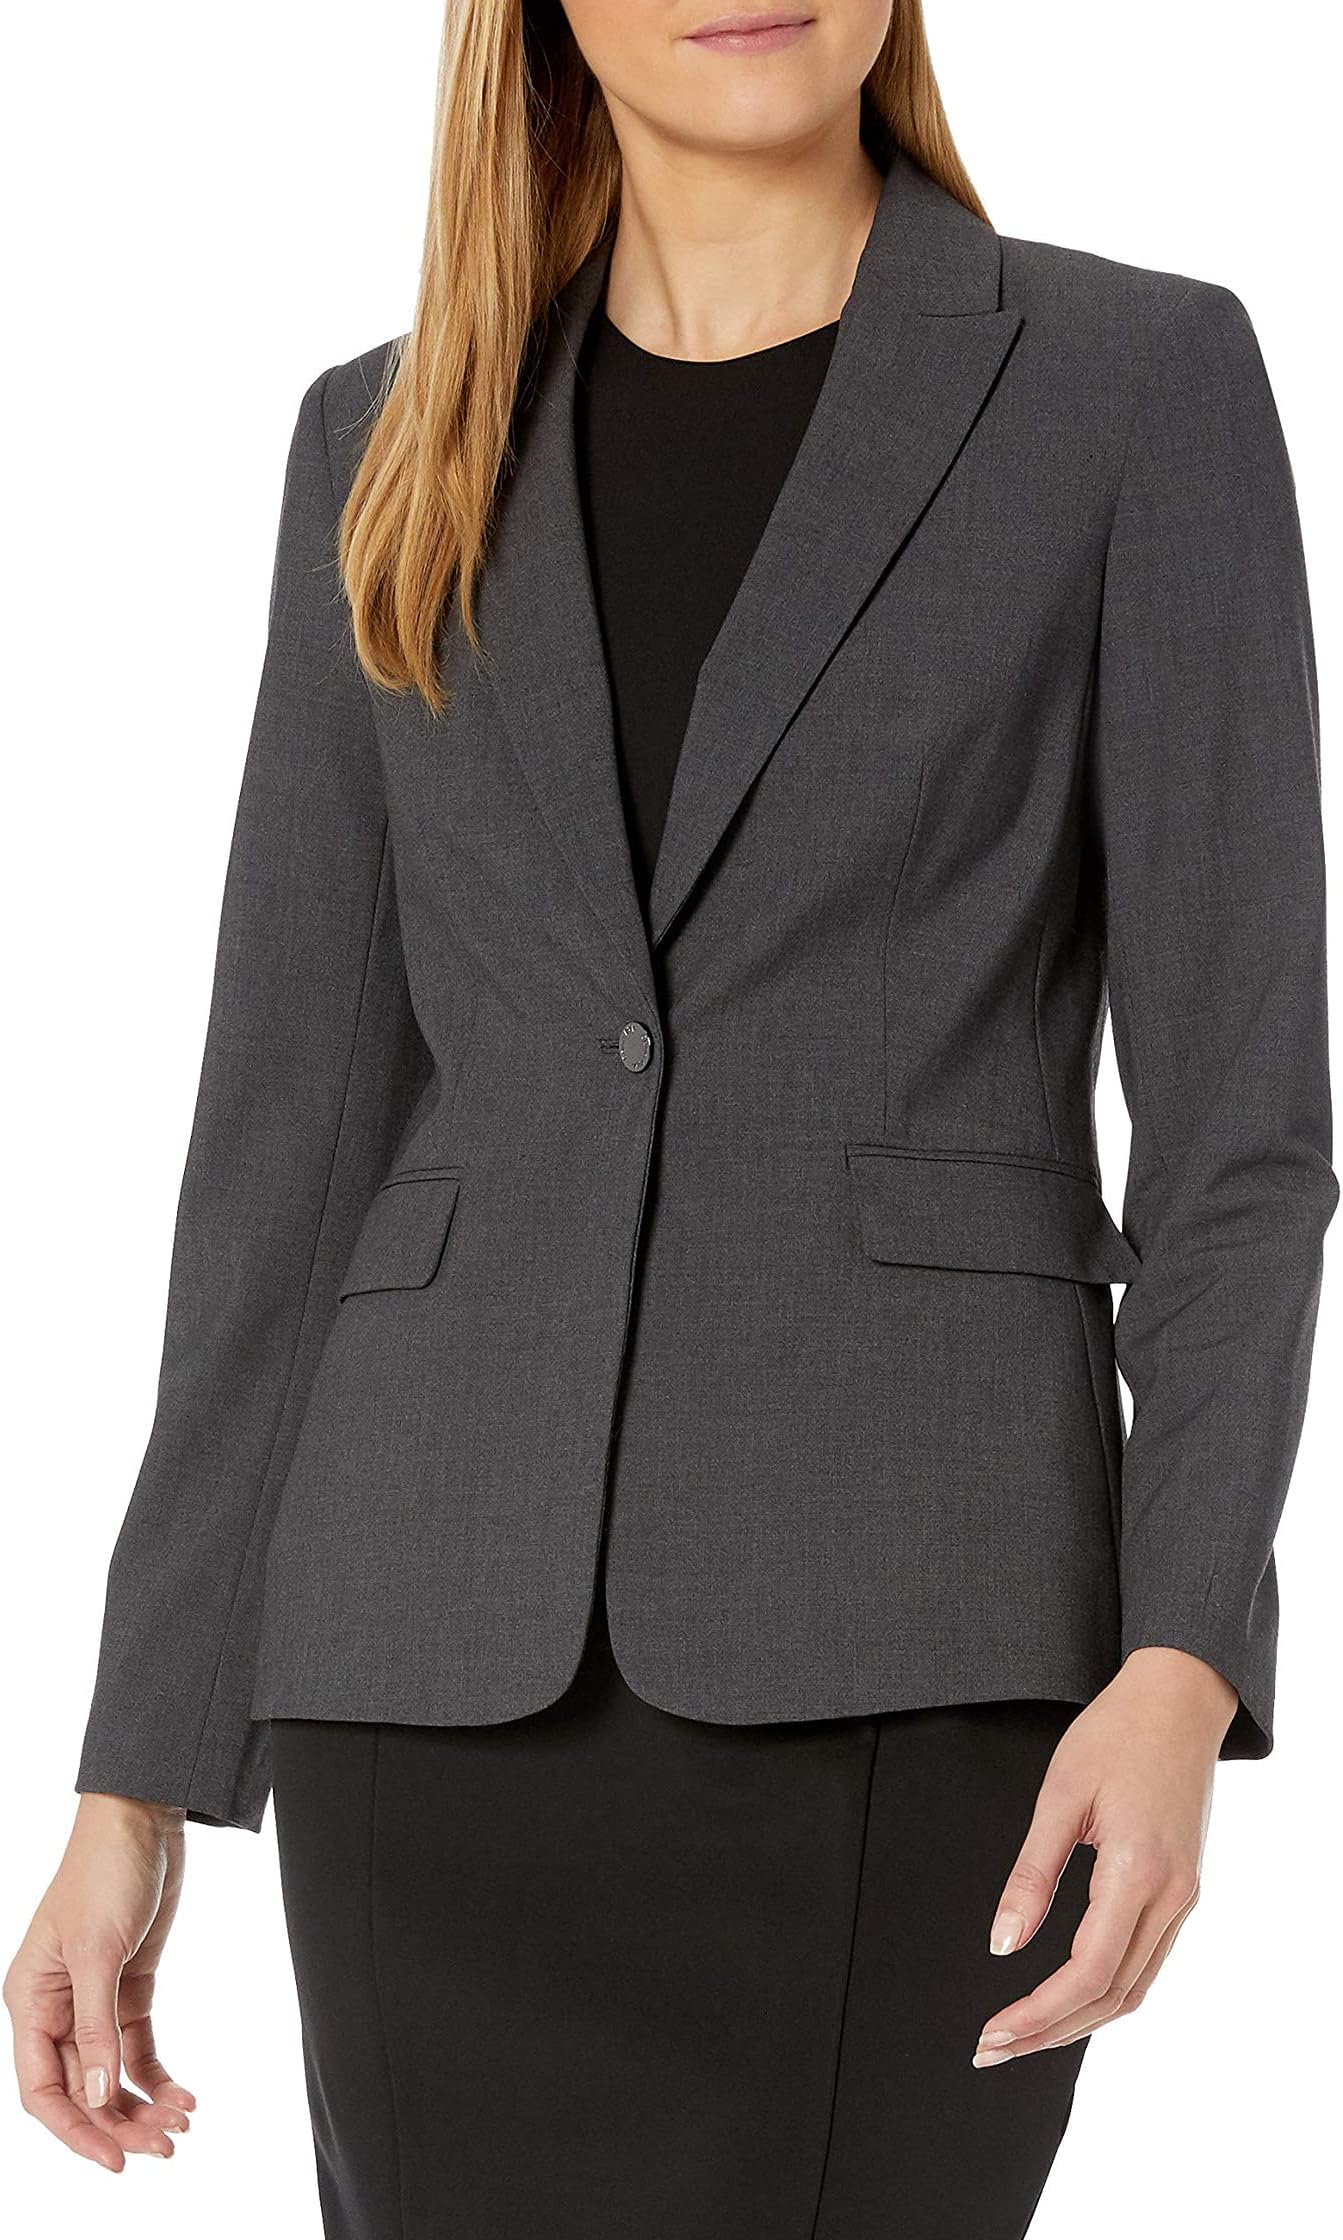 Женский пиджак Lux на одной пуговице Calvin Klein, цвет Charcoal женский пиджак lux на одной пуговице calvin klein цвет charcoal